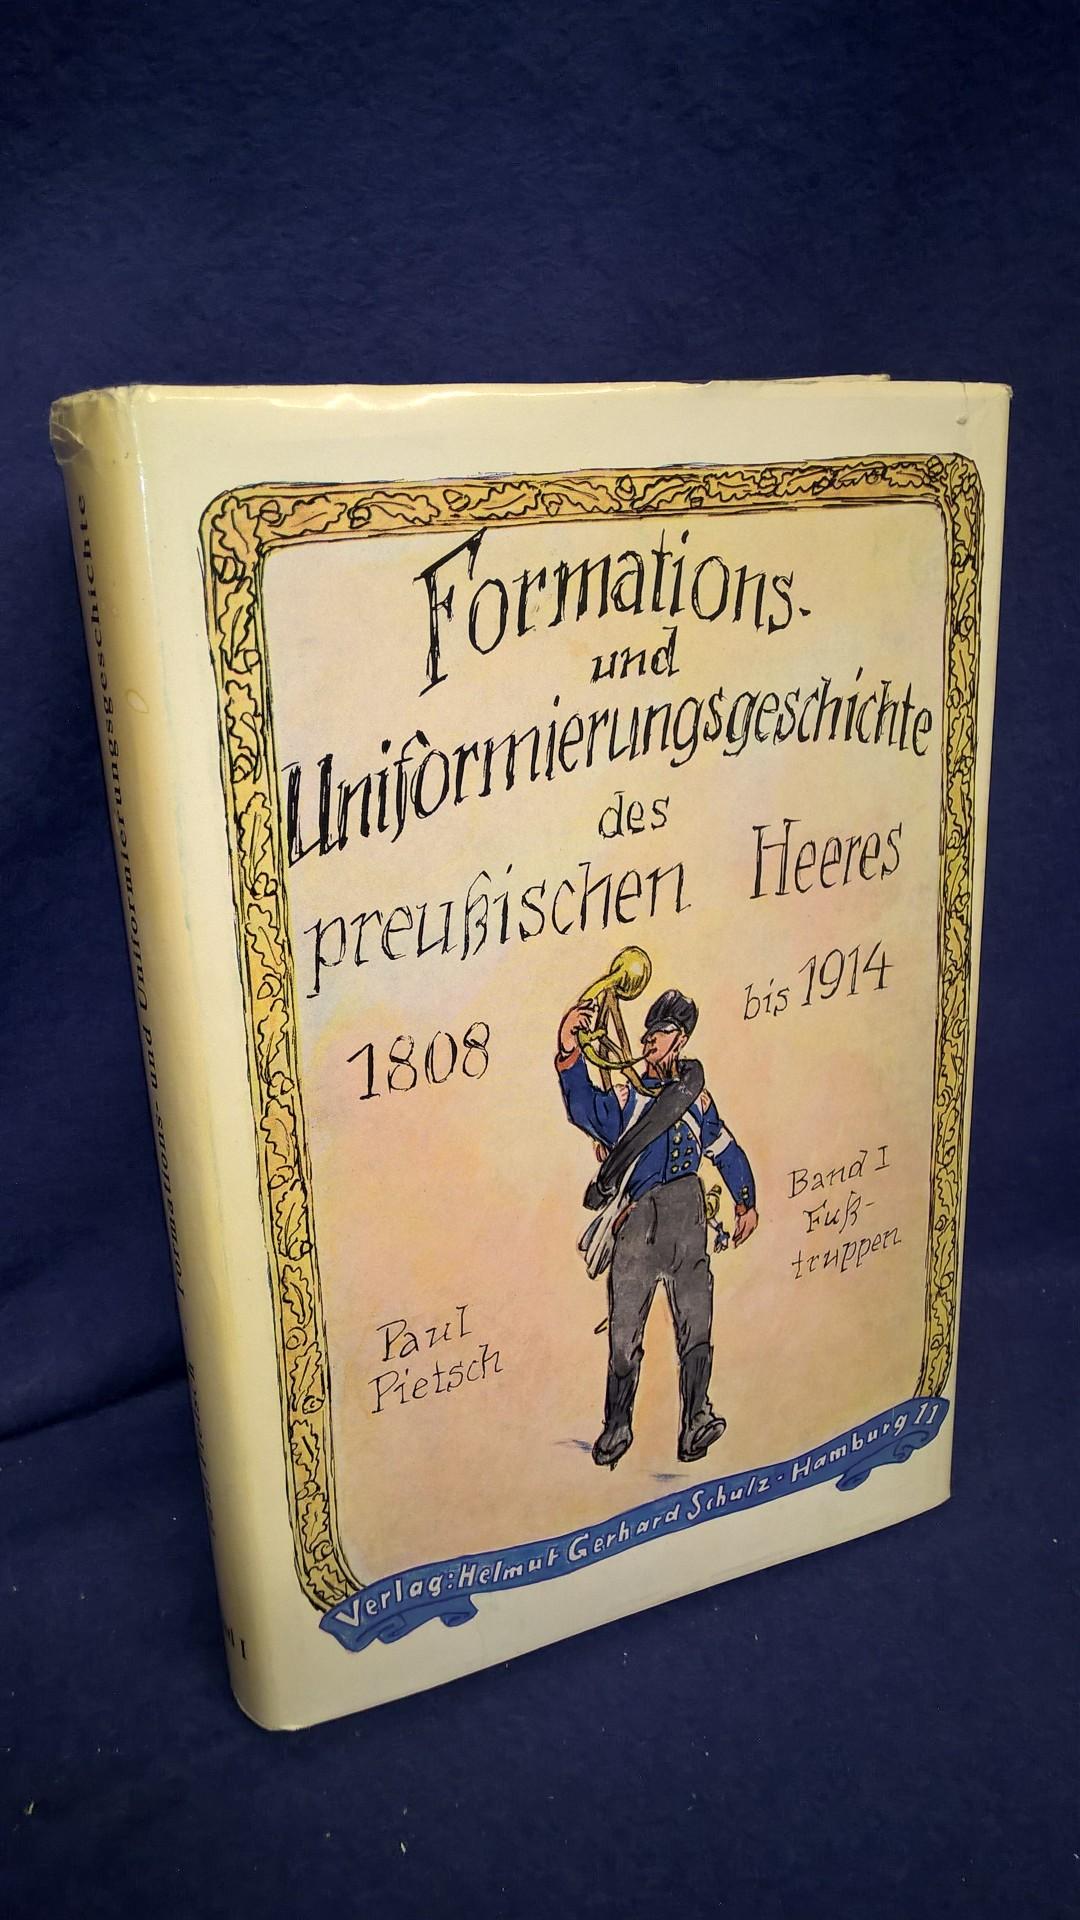 Formations- und Uniformierungsgeschichte des preußischen Heeres 1808 - 1914, Band 1: Fußtruppen.